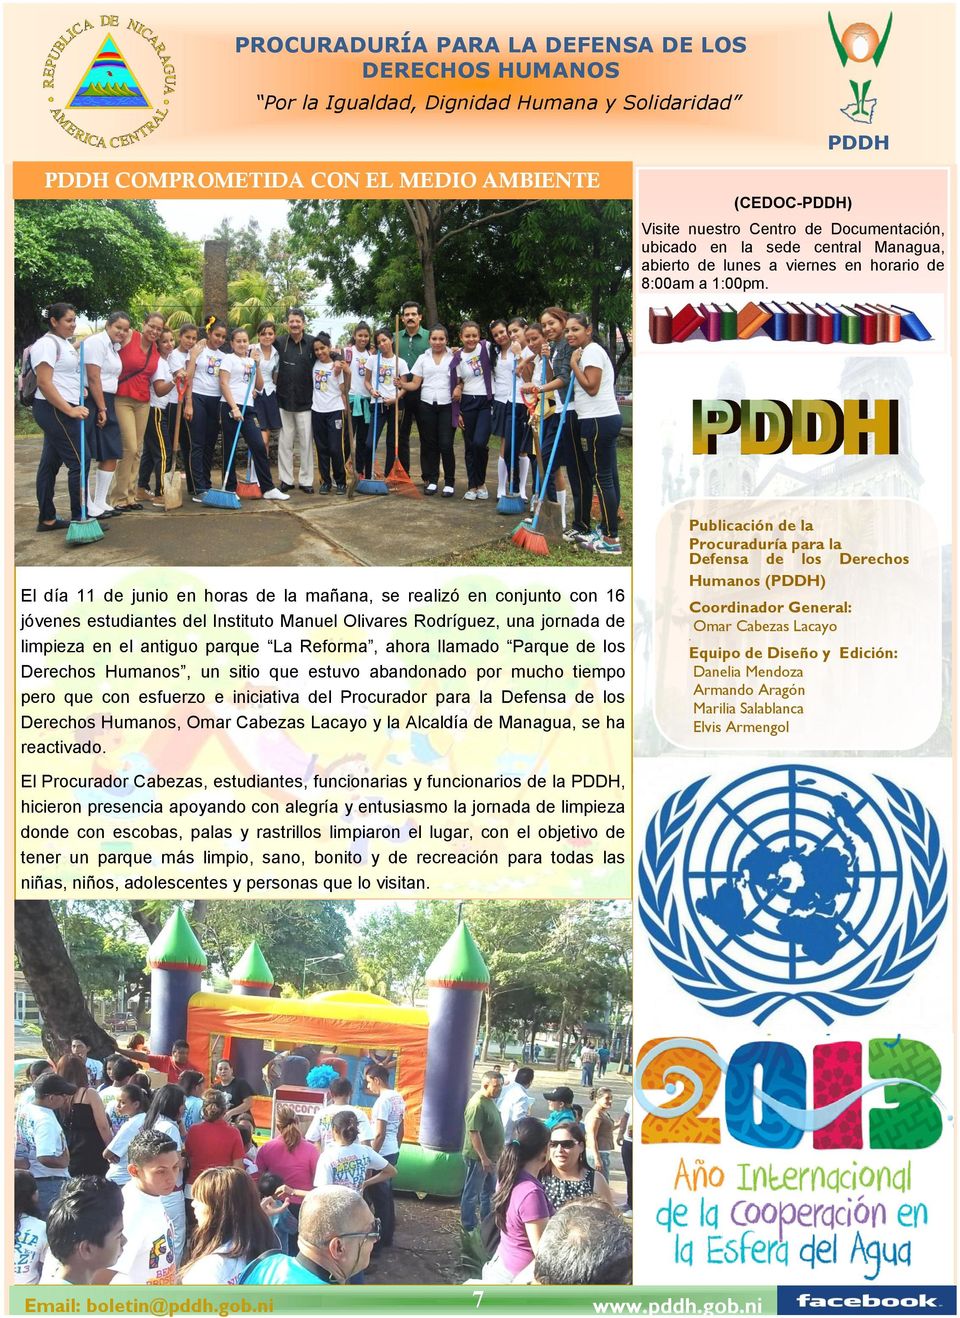 El día 11 de junio en horas de la mañana, se realizó en conjunto con 16 jóvenes estudiantes del Instituto Manuel Olivares Rodríguez, una jornada de limpieza en el antiguo parque La Reforma, ahora